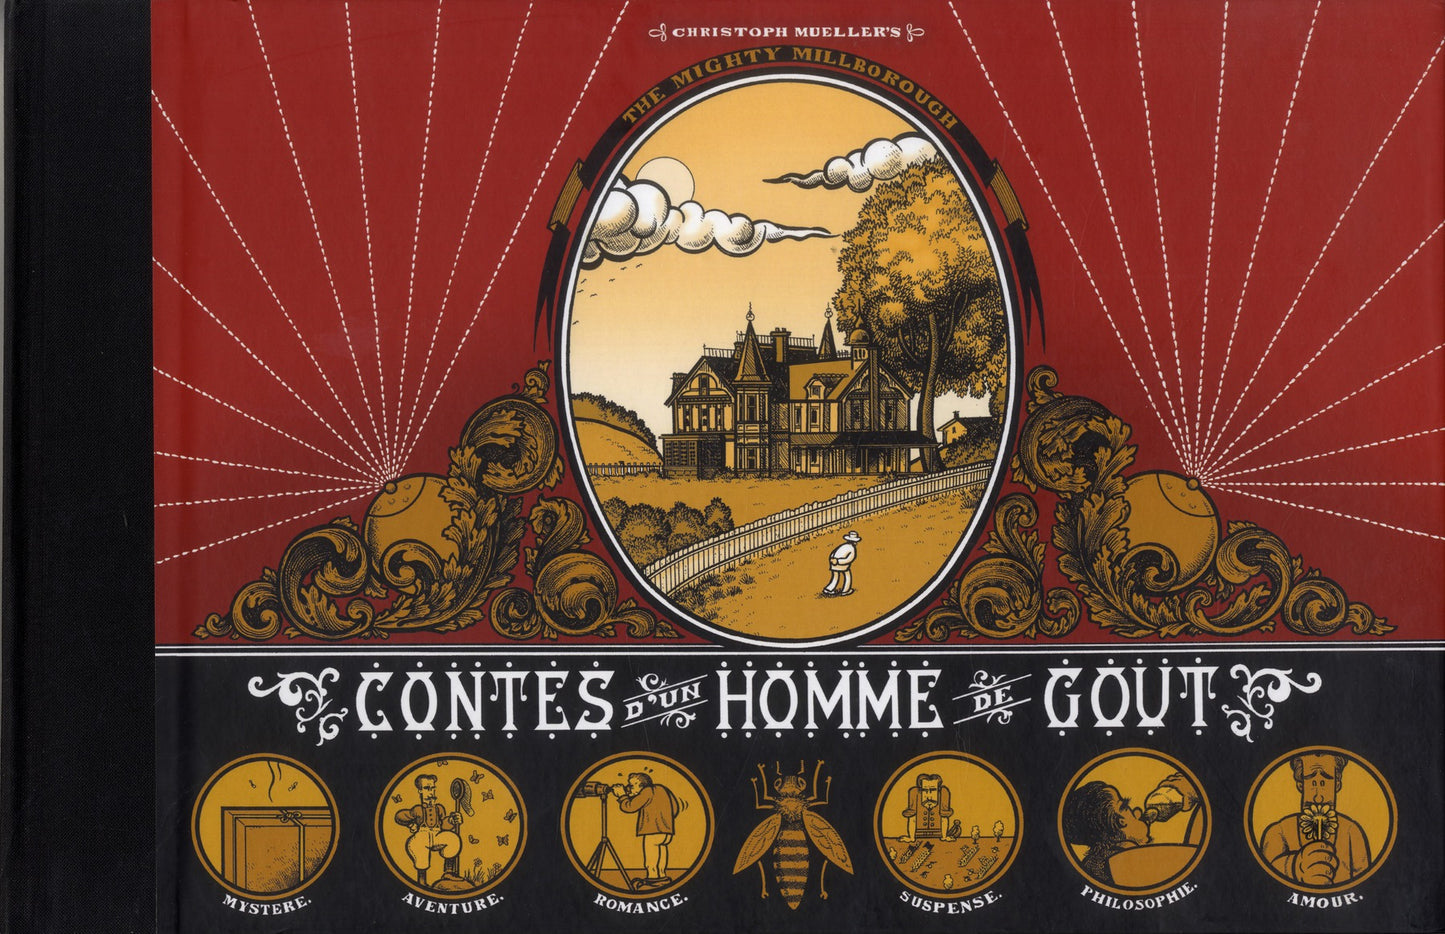 CONTES D'UN HOMME DE GOUT - THE MIGHTY MILLBOROUGH